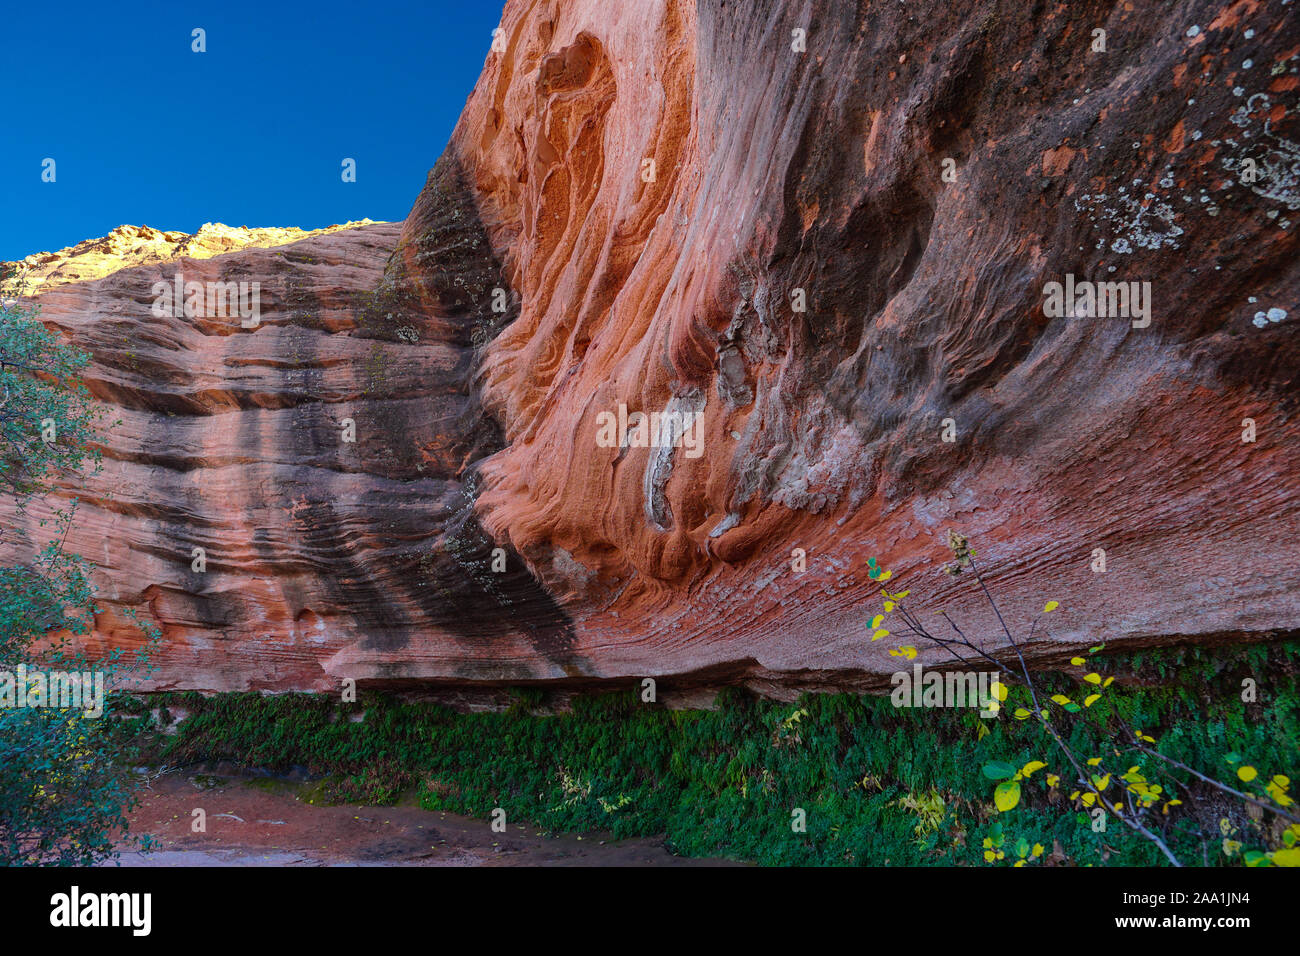 Los asombrosos colores de una gruta de piedra arenisca alrededor del Lago Powell, en el norte de Arizona. Foto de stock